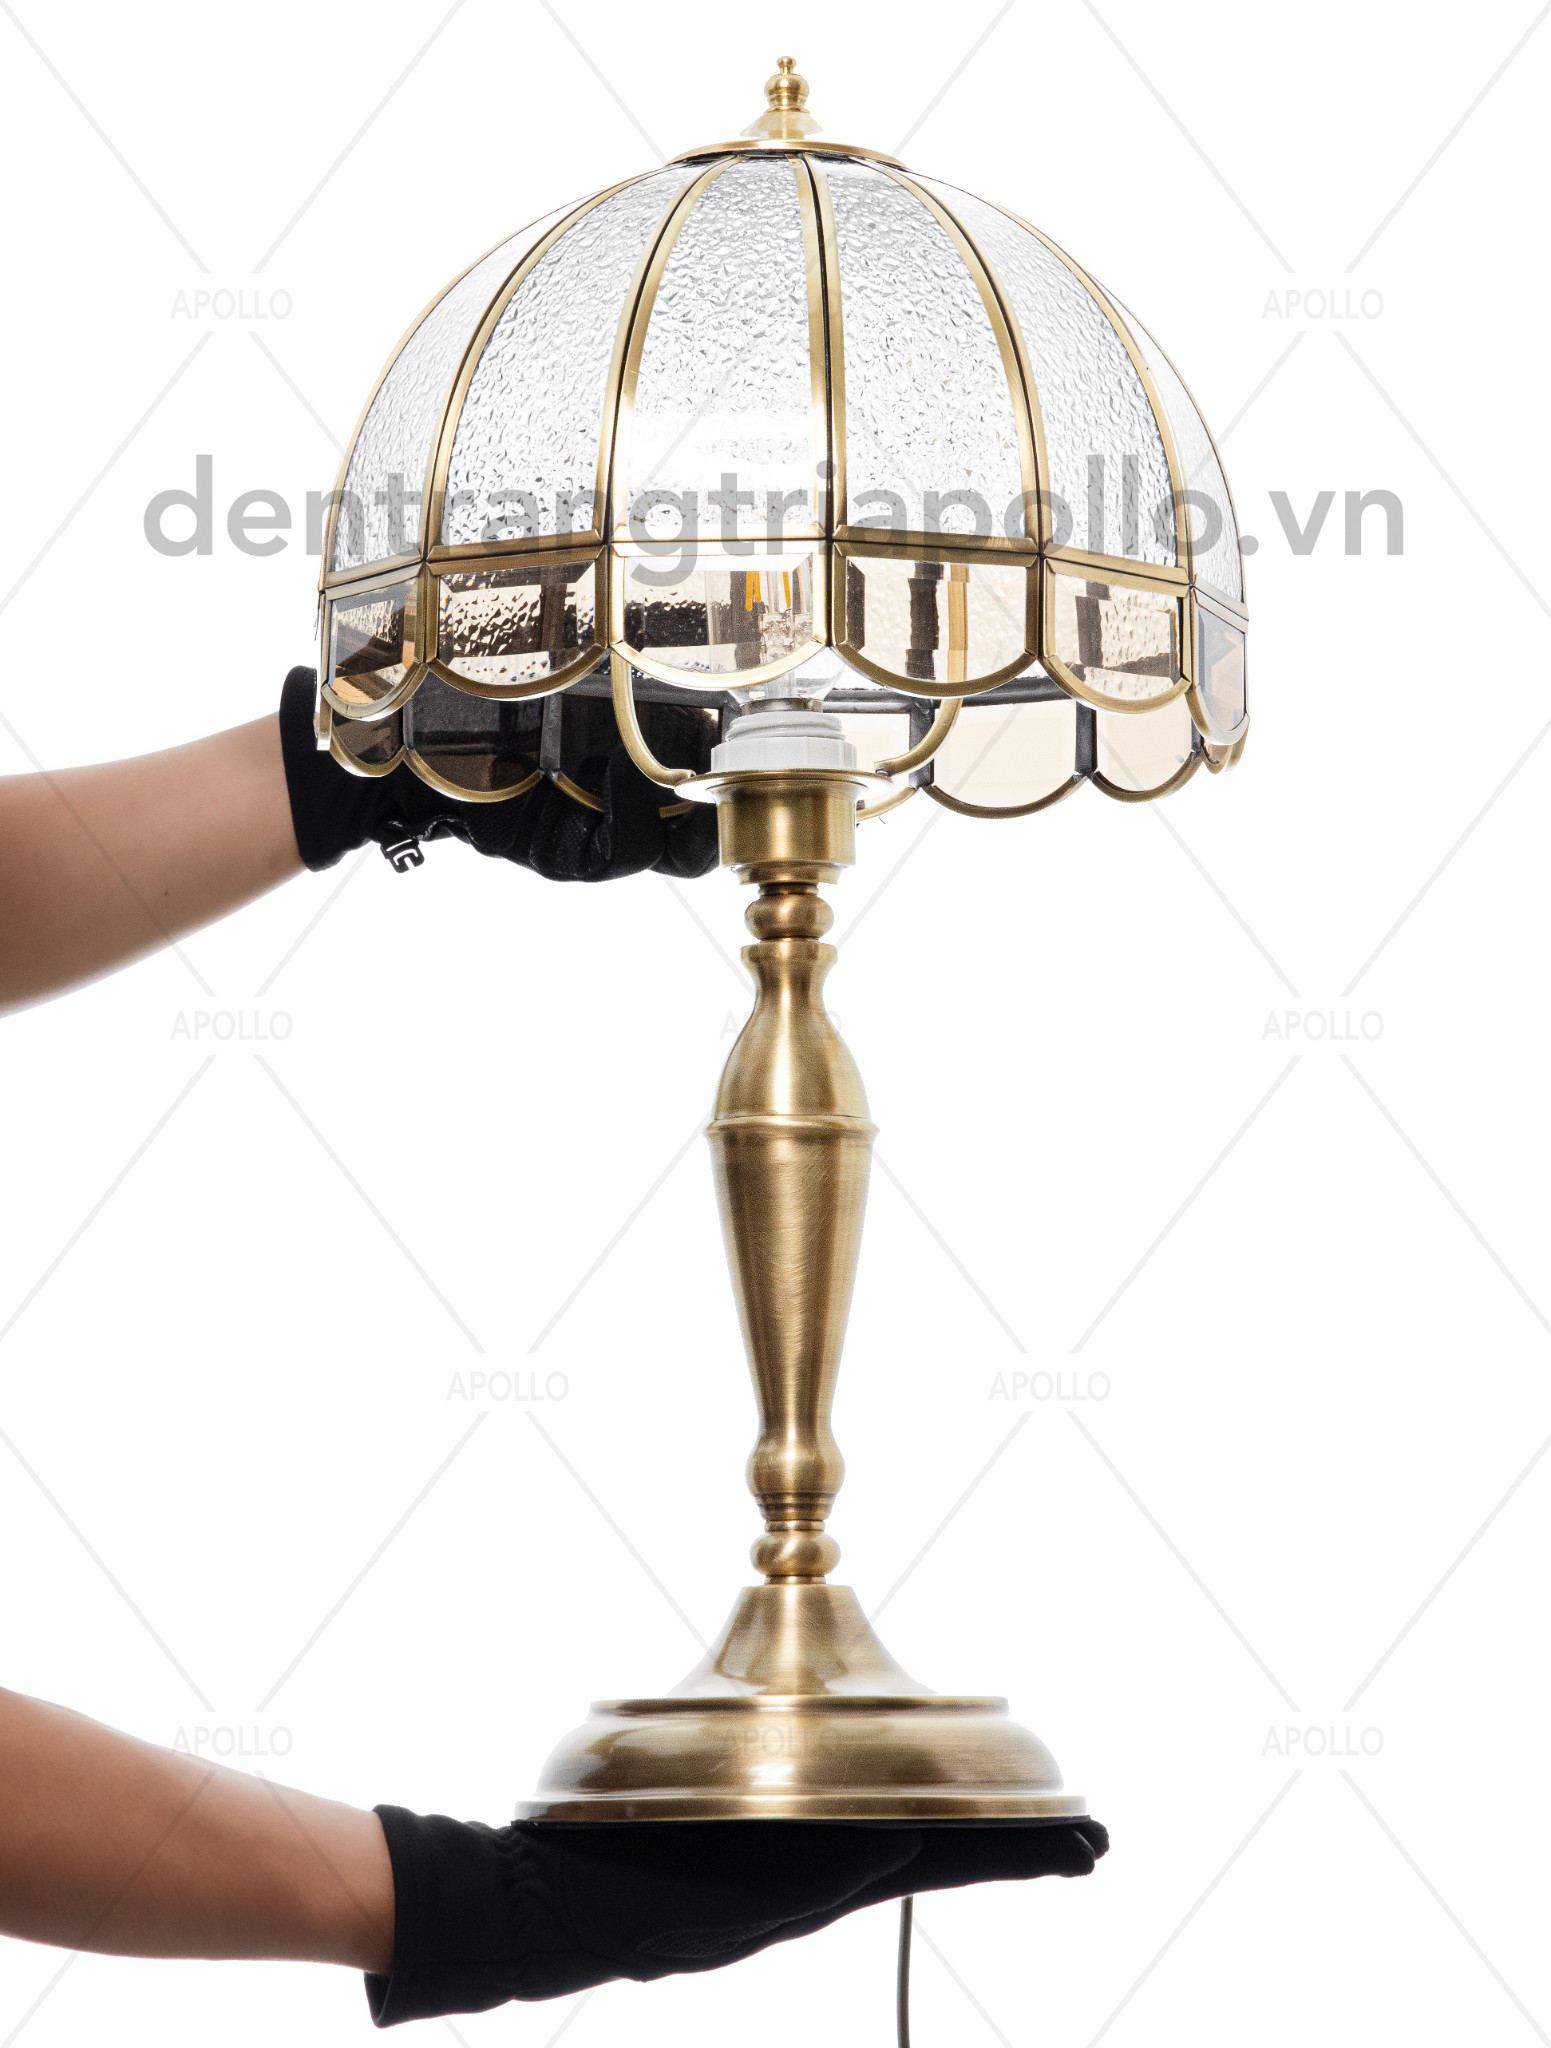 đèn bàn đồng cổ điển cao cấp